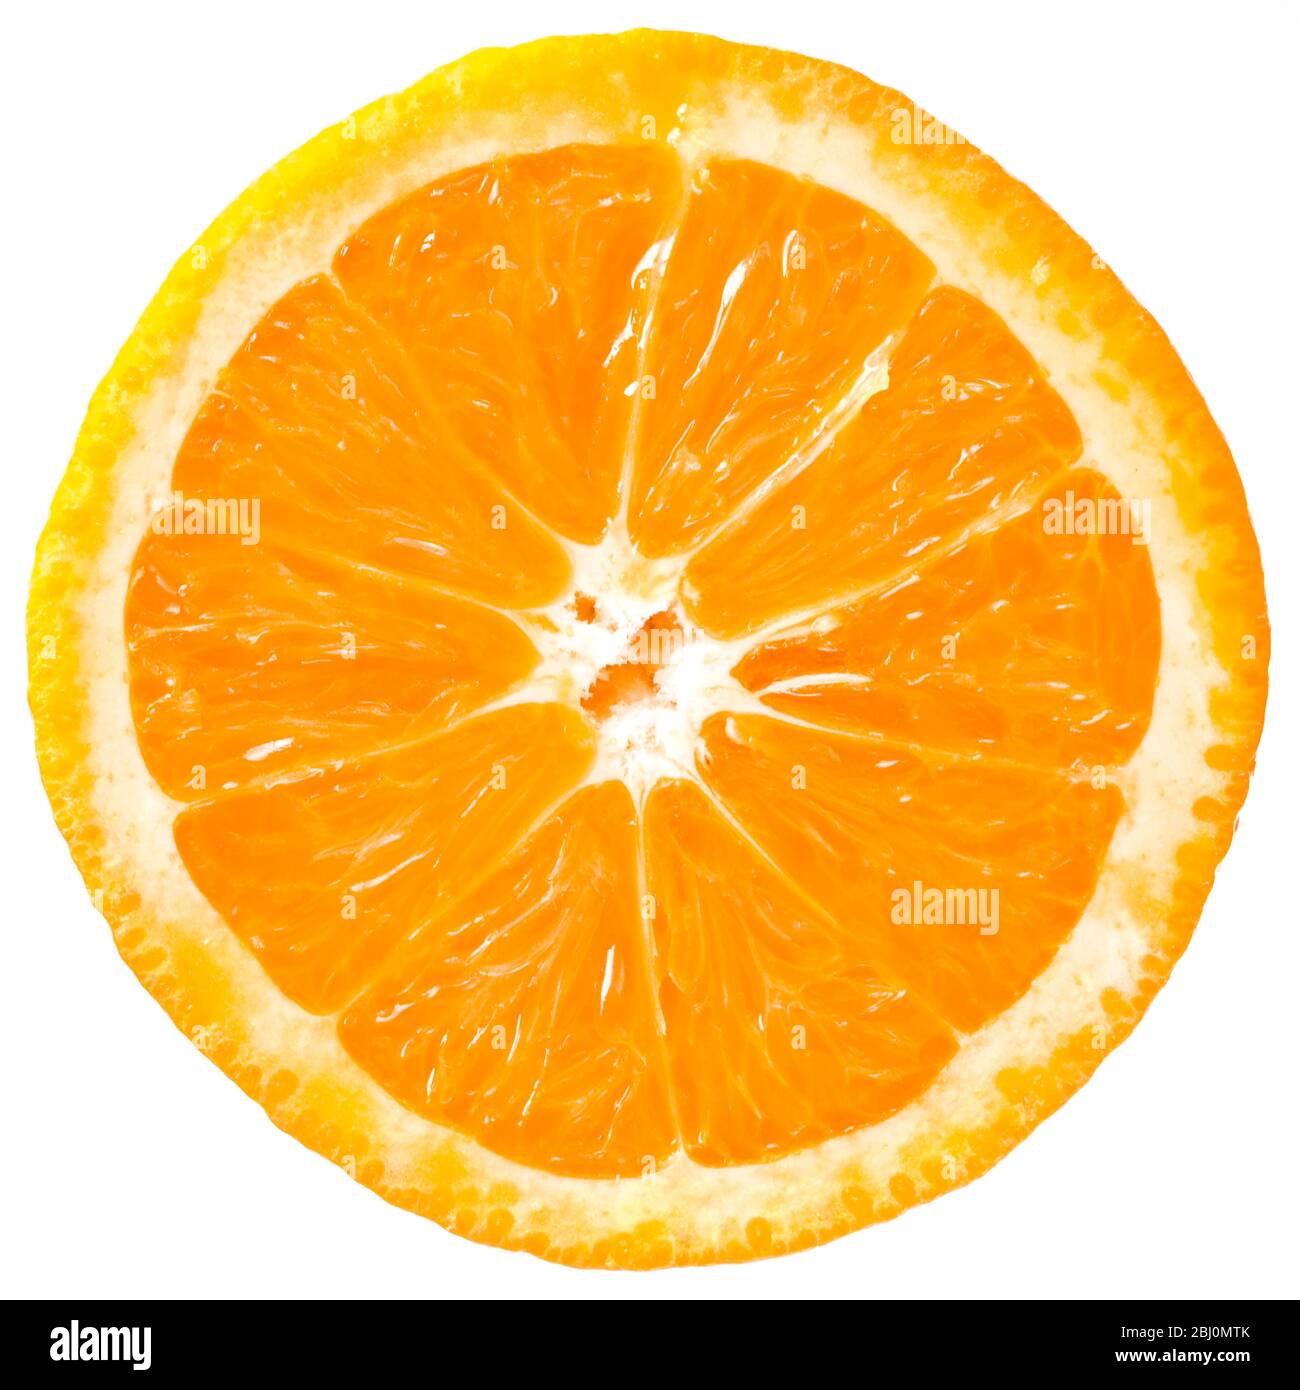 Schnitt Gesicht von halb orange vor weißem Hintergrund - Stockfoto